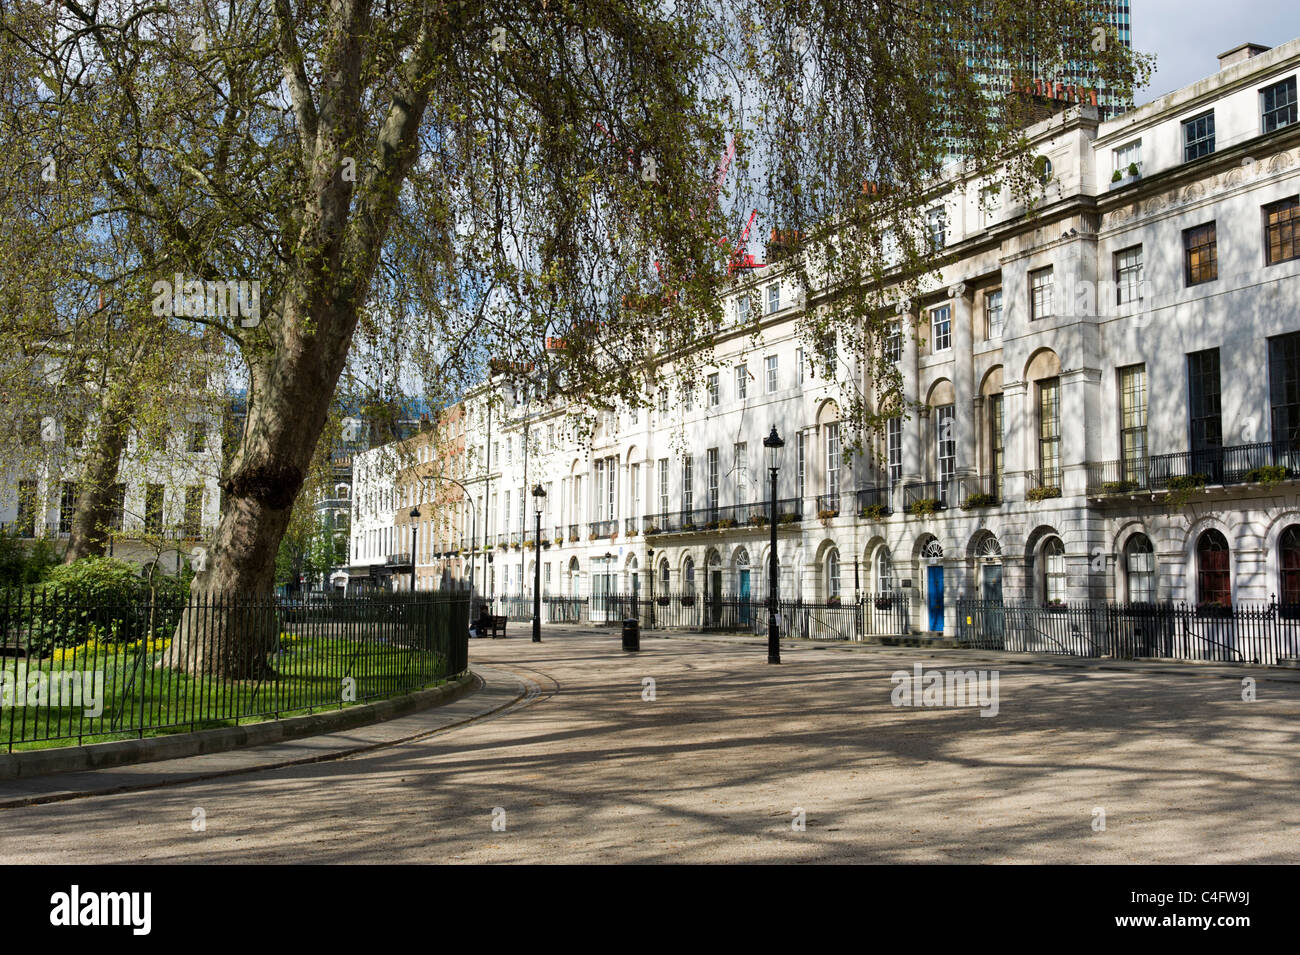 Fitzroy Square, London, UK Banque D'Images